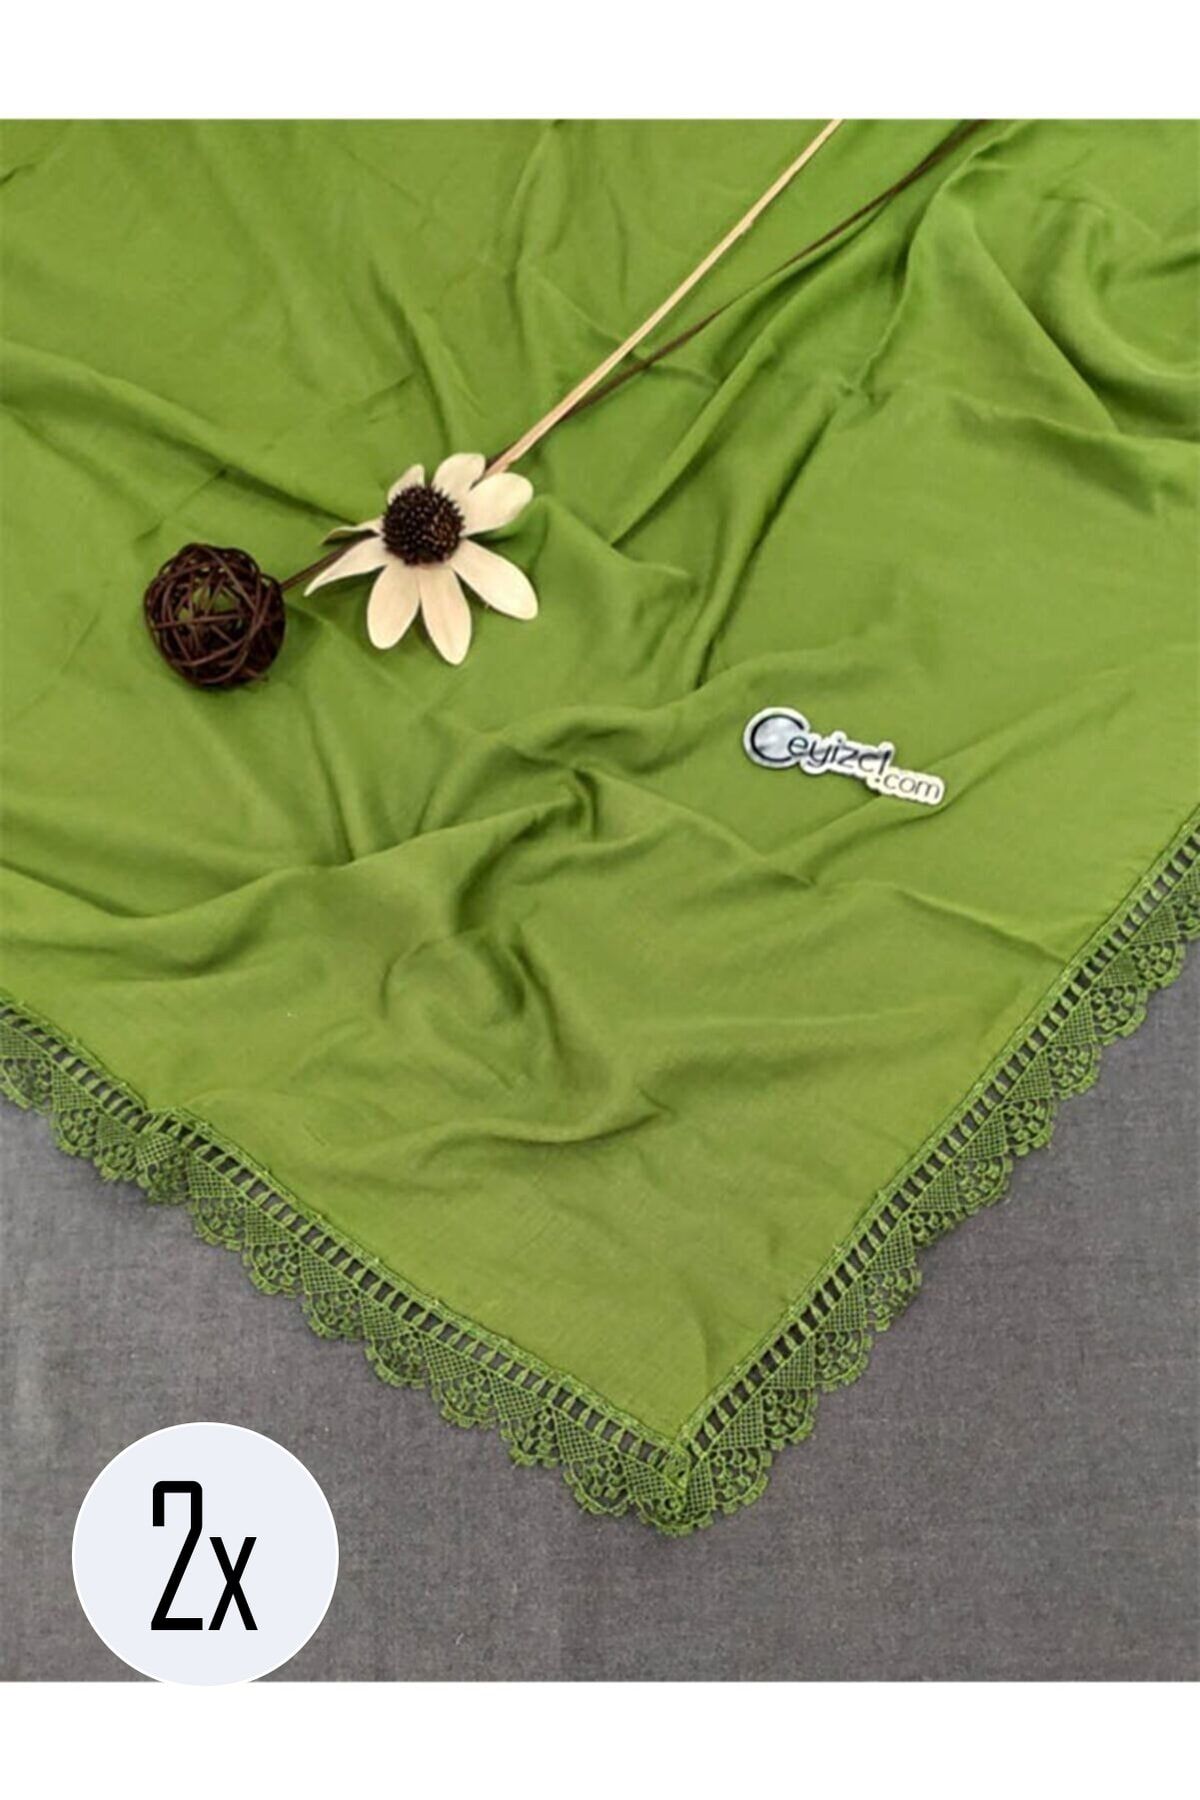 Çt Çeyizci Tekstil 2 Adet, Çeyizlik Şal, Yazma, Çeyizlik Yemeni, Dantelli Yazma 2 Adet 100x100cm - Kına Yeşili